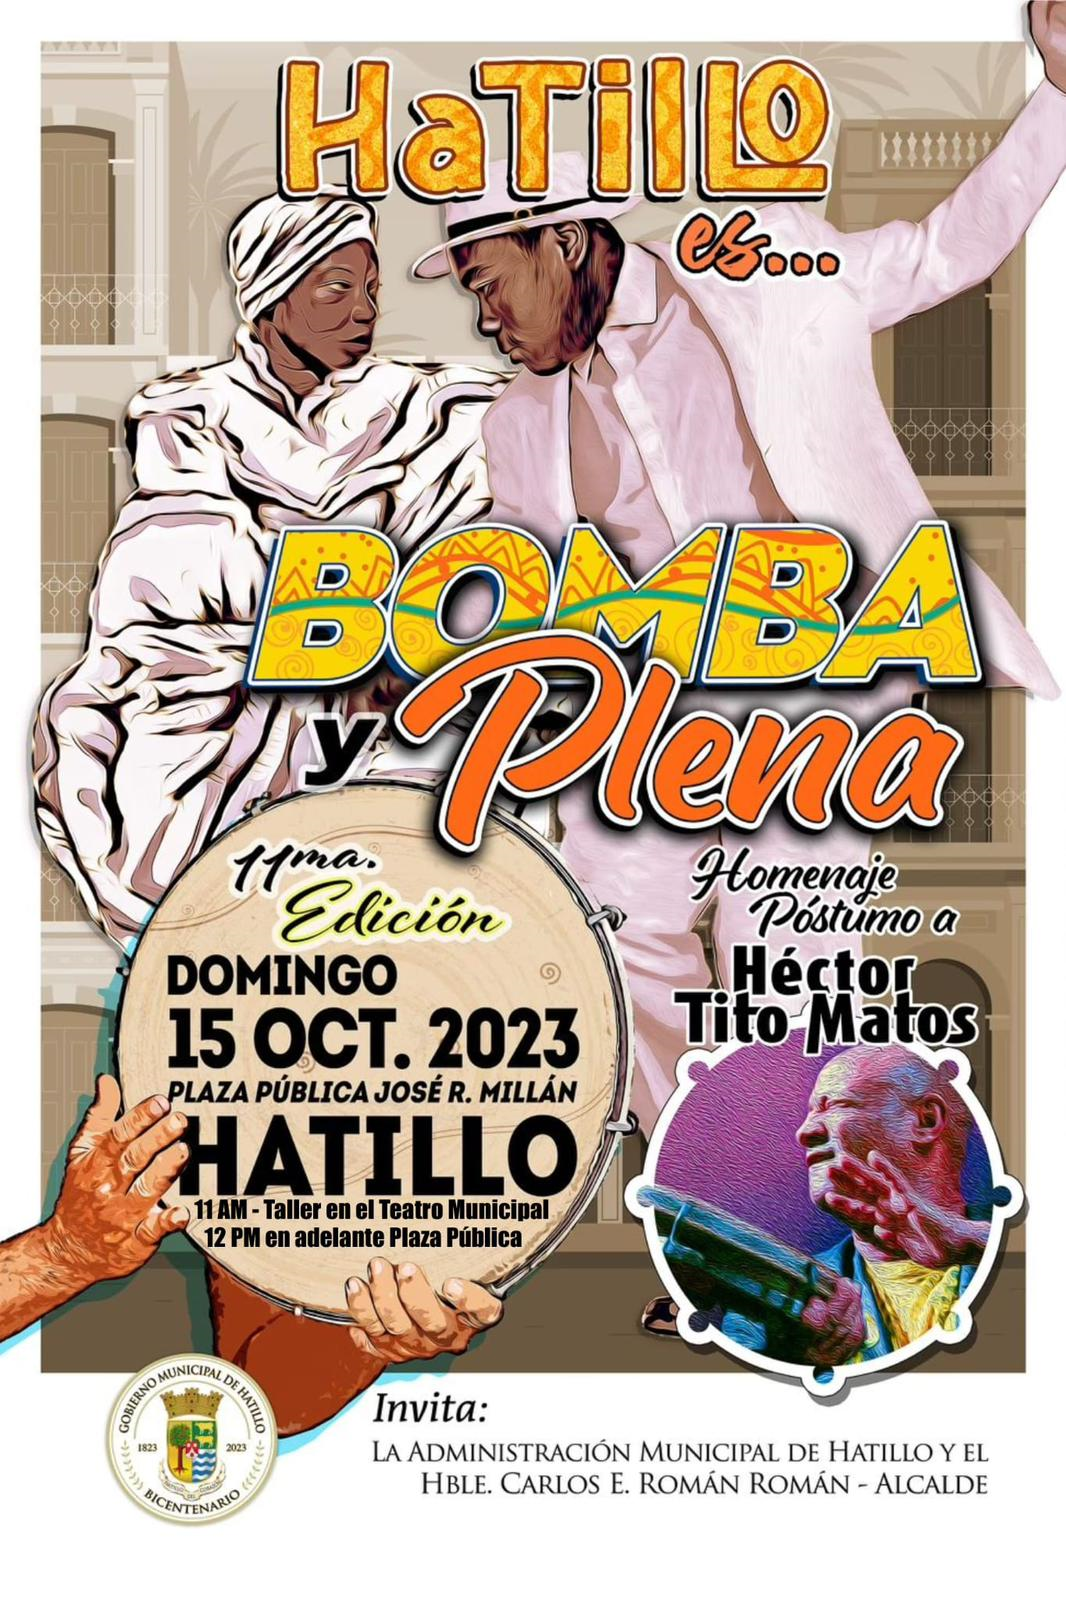 La 11ma edición de Hatillo es... Bomba y Plena